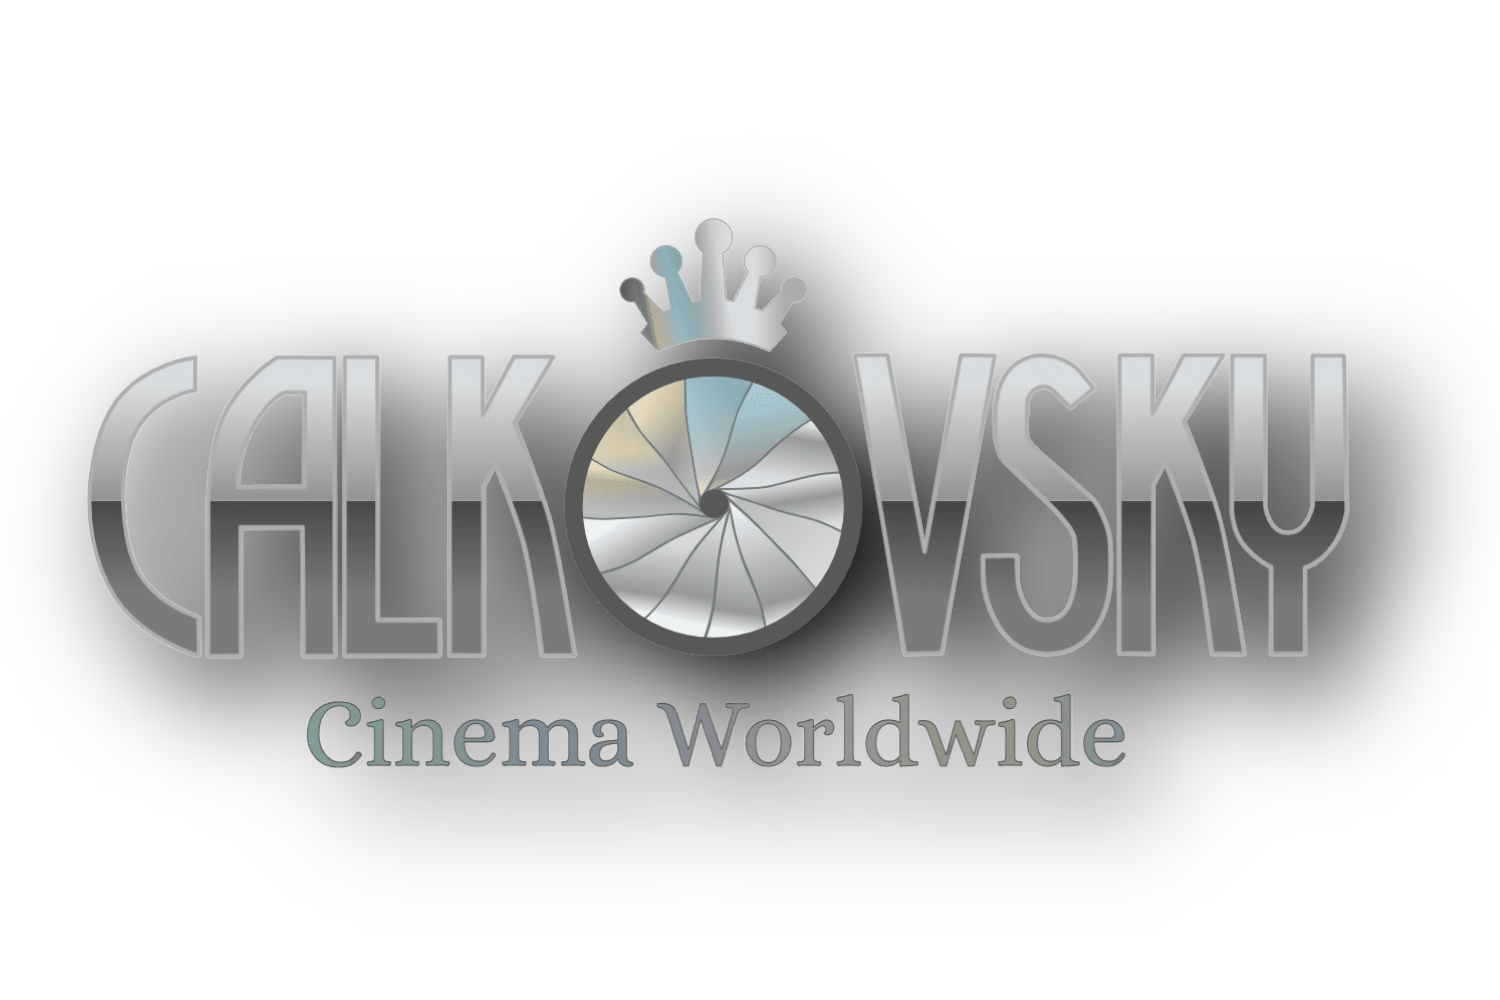 Calkovsky Cinema Worldwide